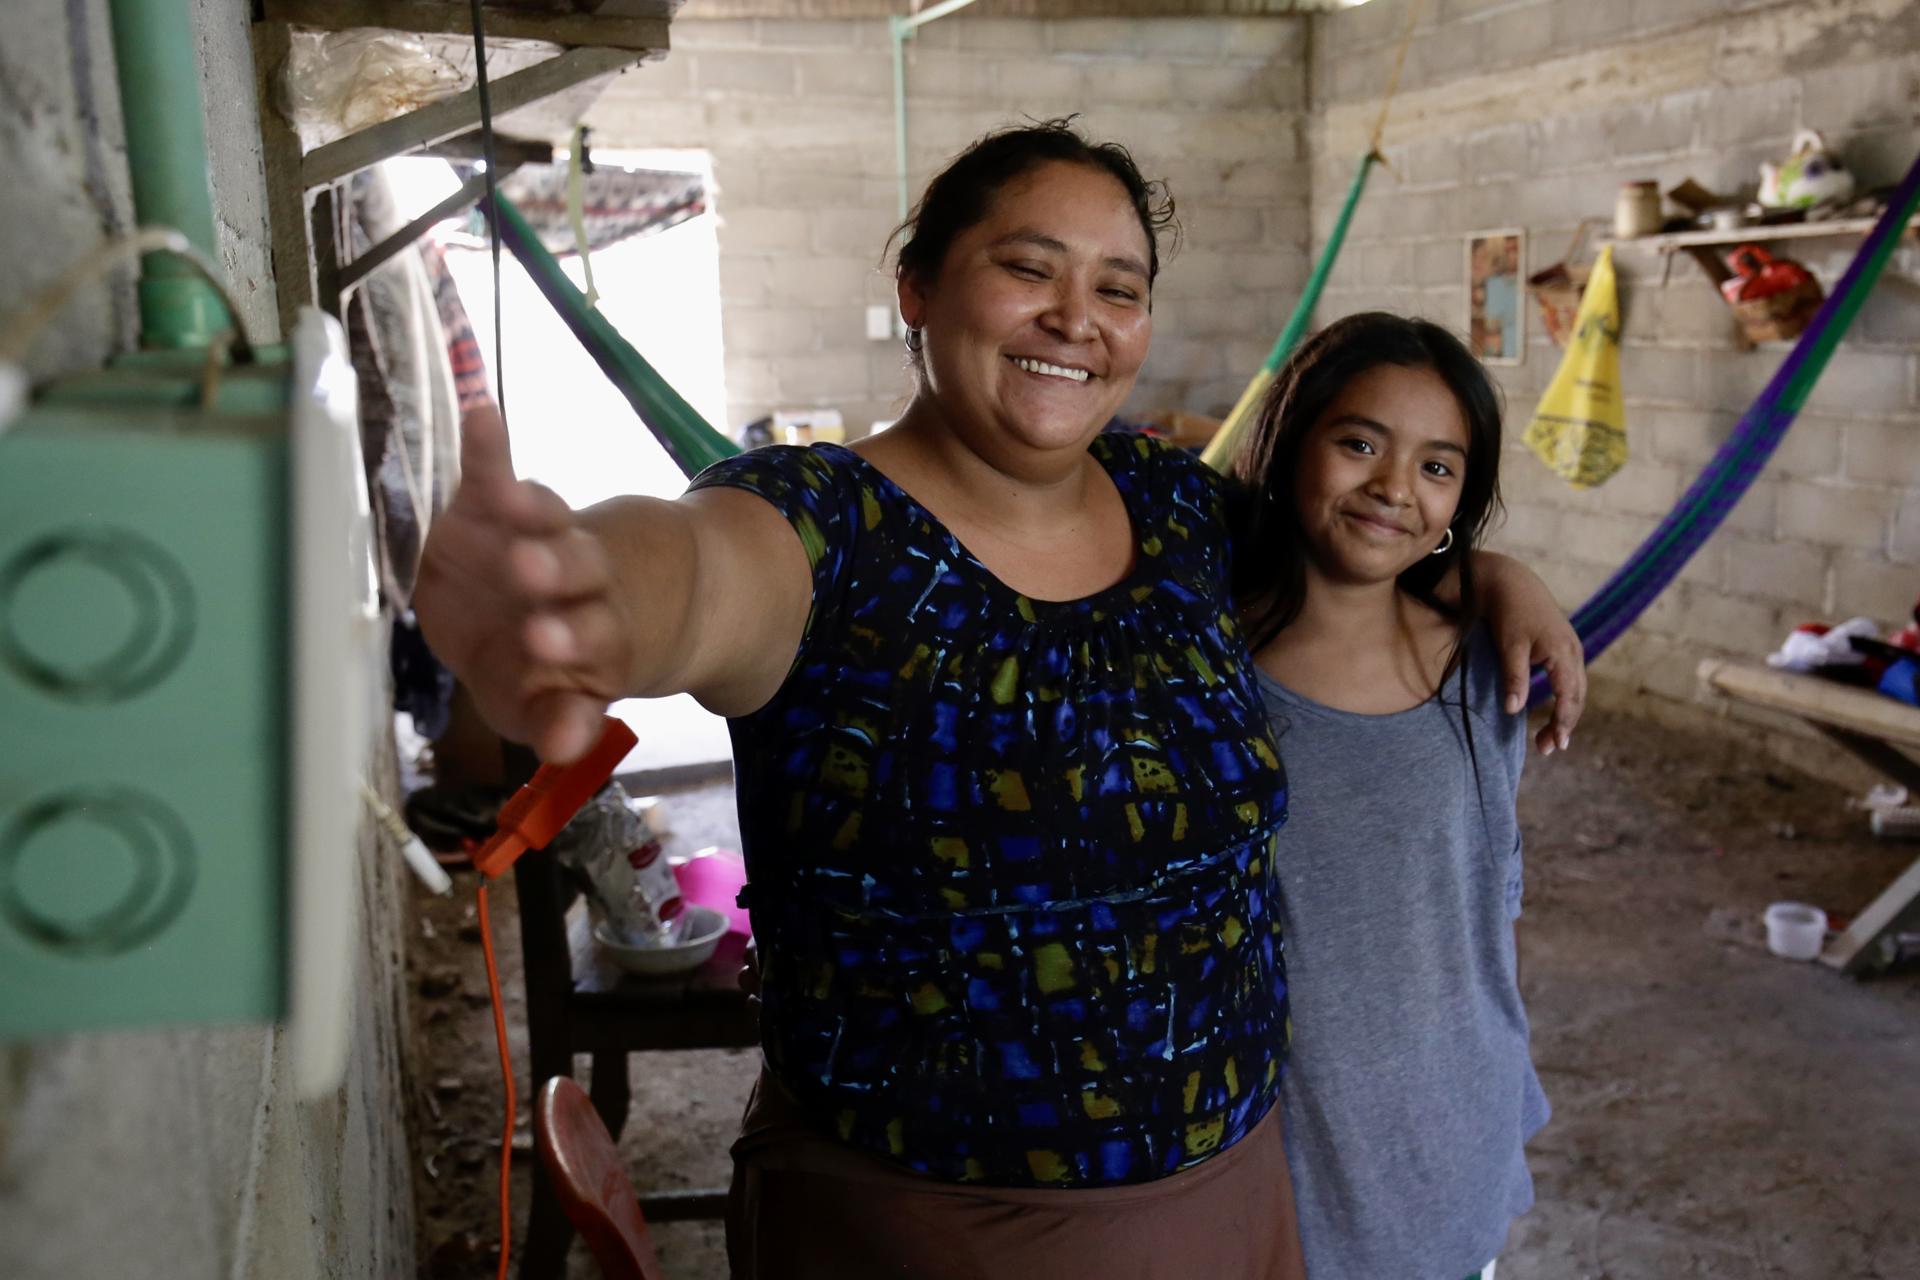 Fotografía cedida por Iberdrola México que muestra un sistema solar de energía en una vivienda, como parte de la tercera fase del programa "Luces de Esperanza en Oaxaca". EFE/ Iberdrola México